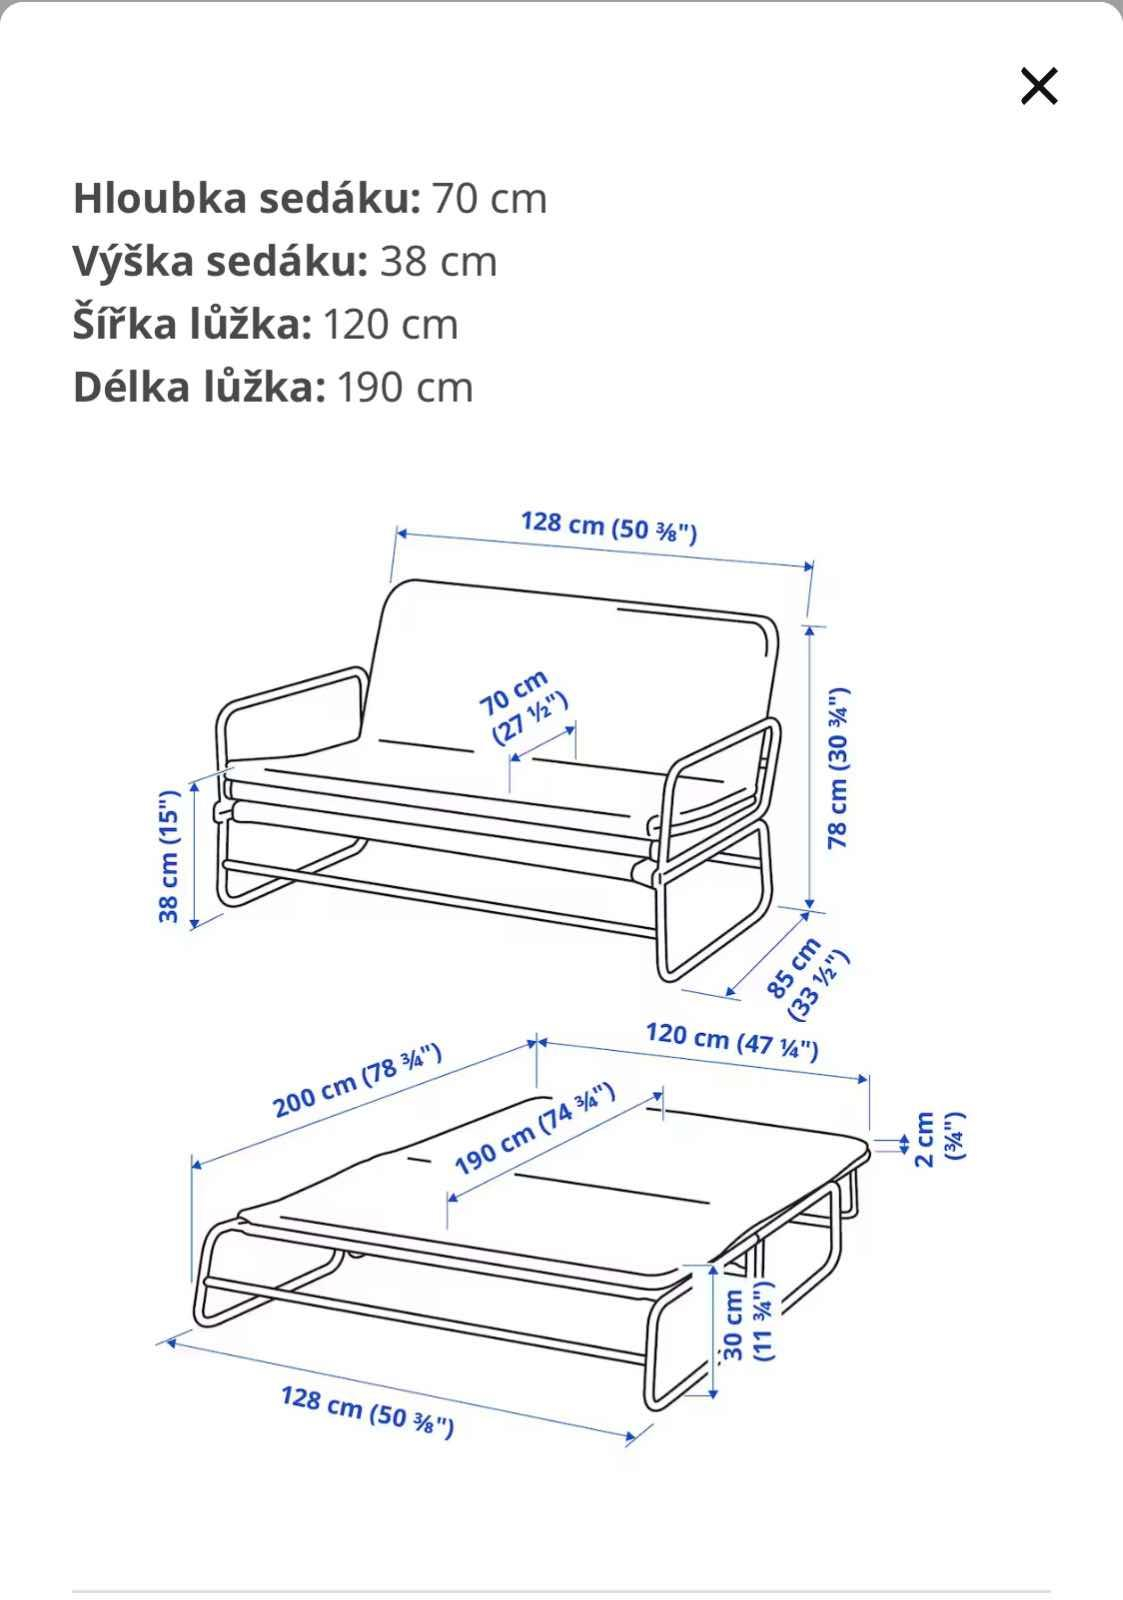 Daruji rozkládací pohovku IKEA. REZERVACE Daruji rozkládací pohovku IKEA Hammarn. Je potřeba vyčistit potah (dá se prát v pračce) a nějaké šroubky jsme měnili za neoriginální. Pohovka je funkční. Rozměry lůžka 120 x190 cm.